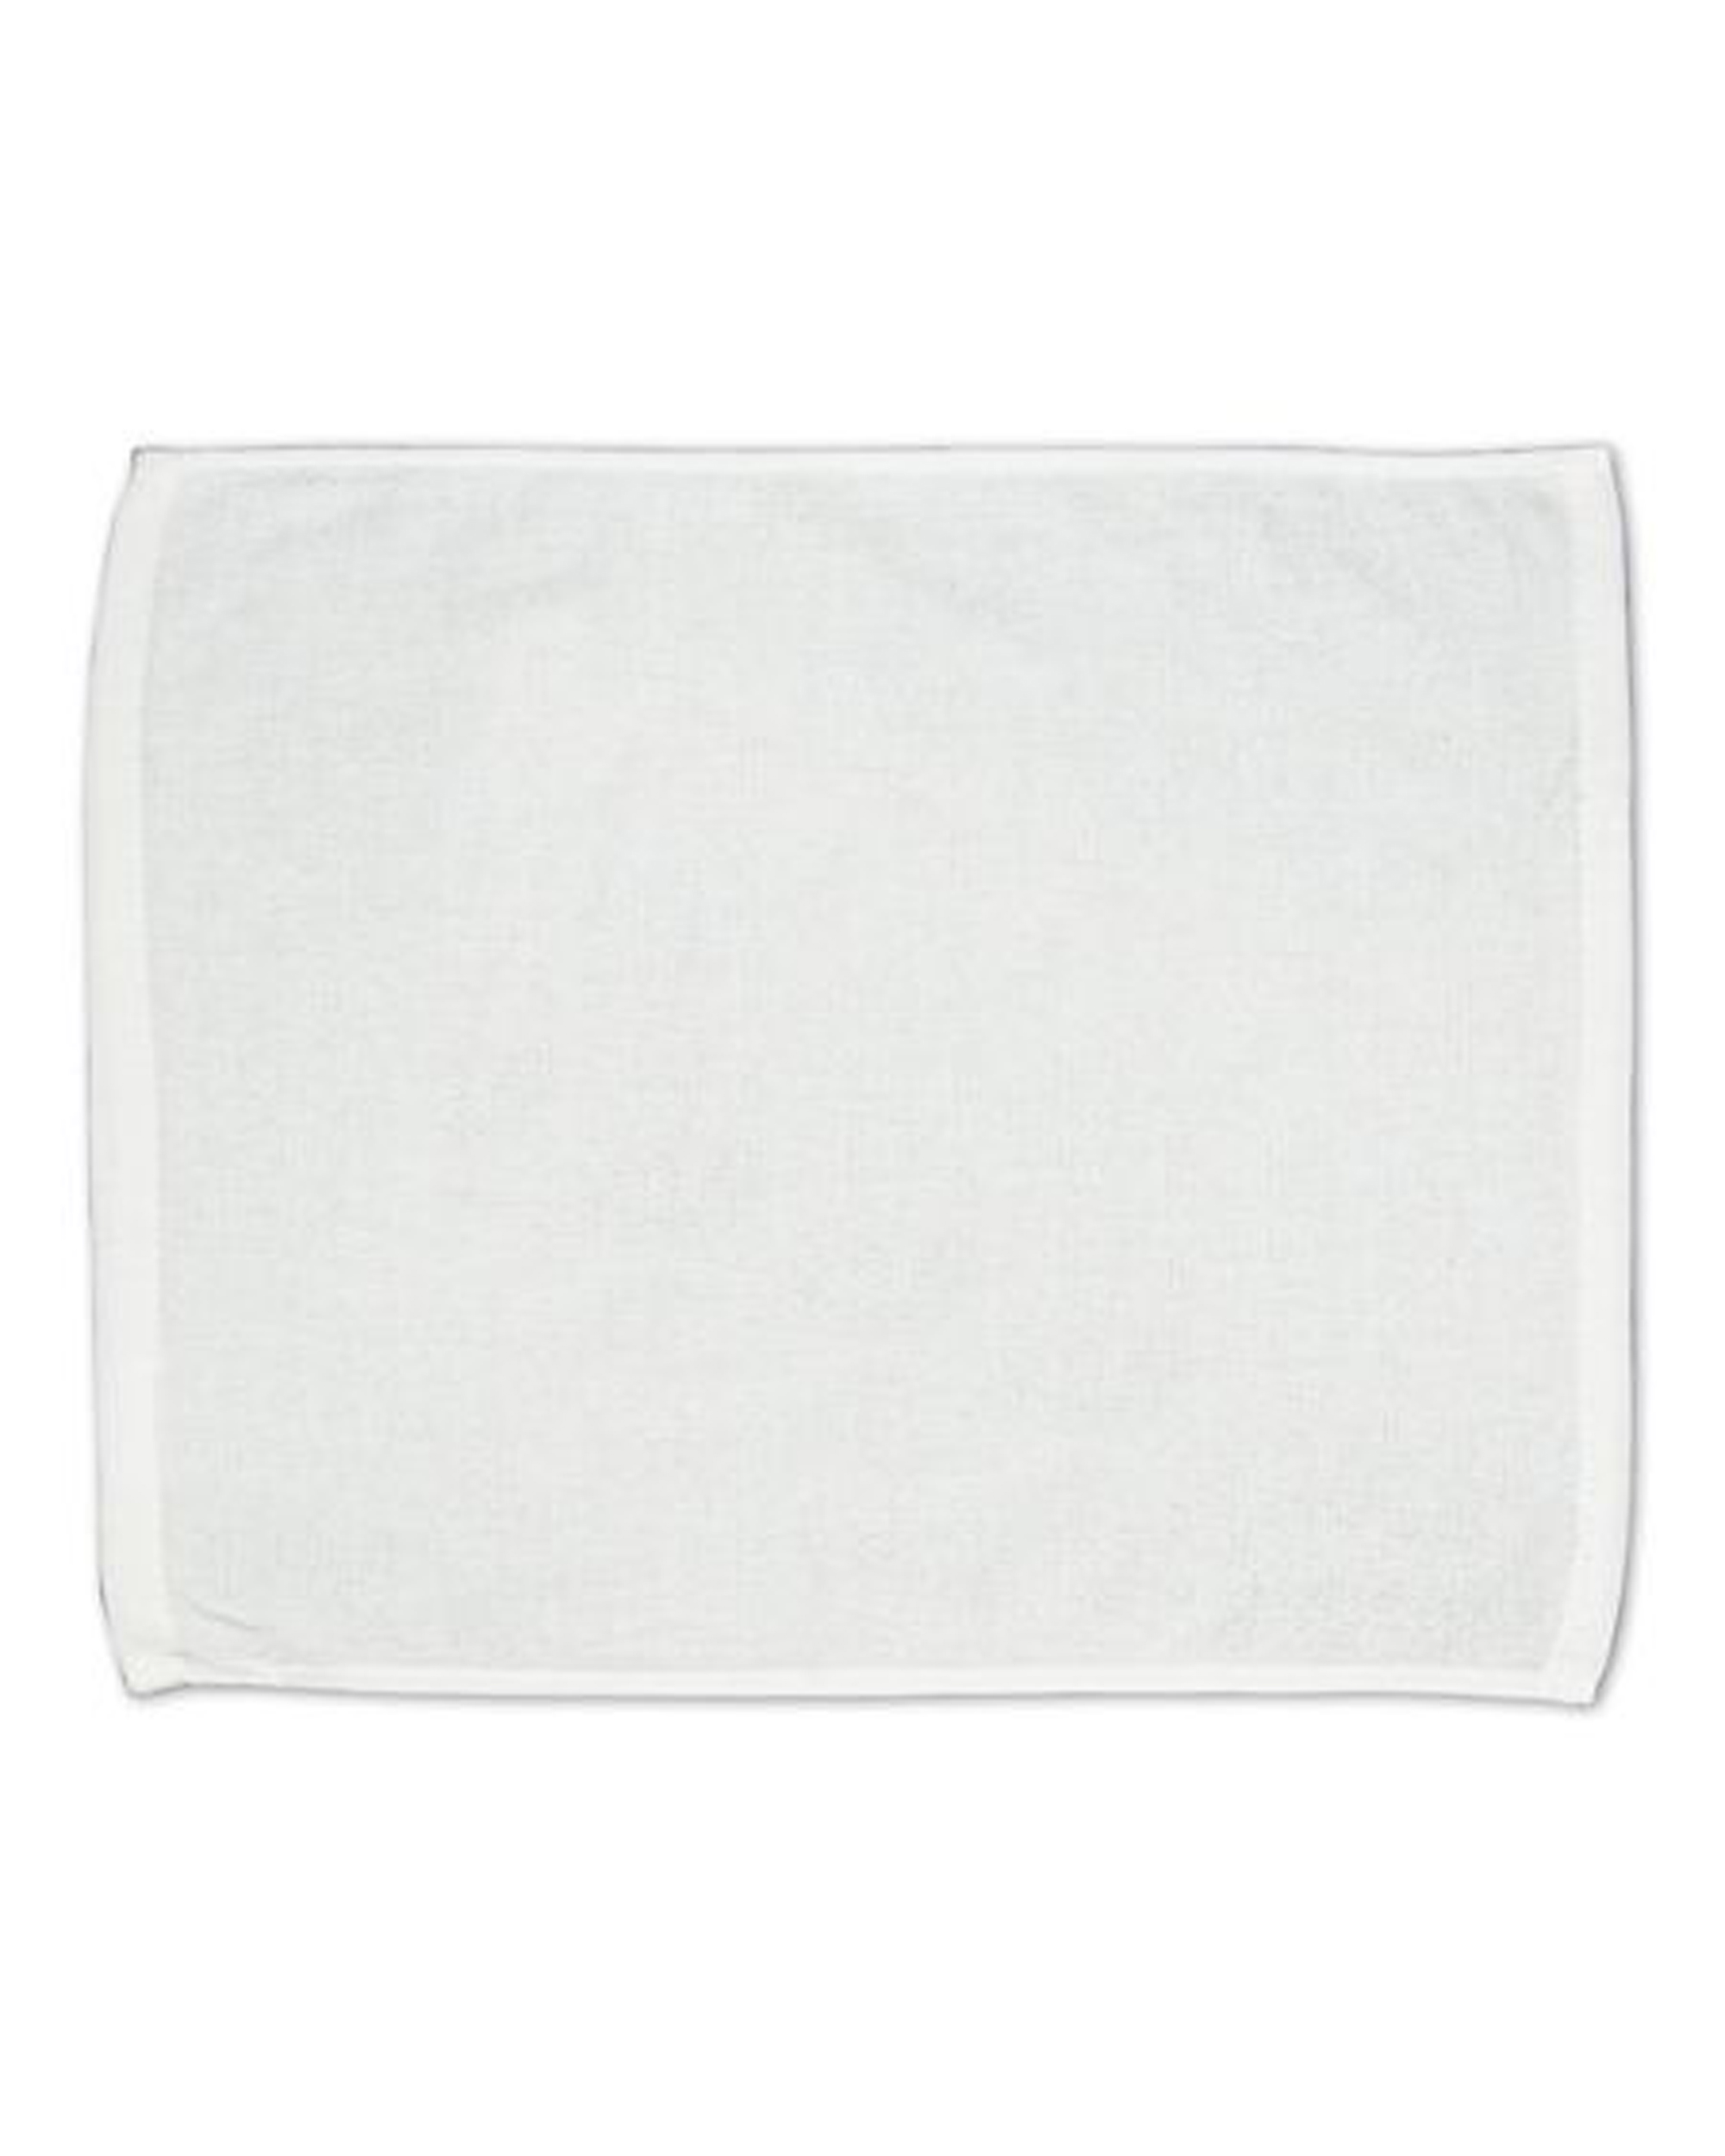 Carmel Towels C162523 Hemmed Towel